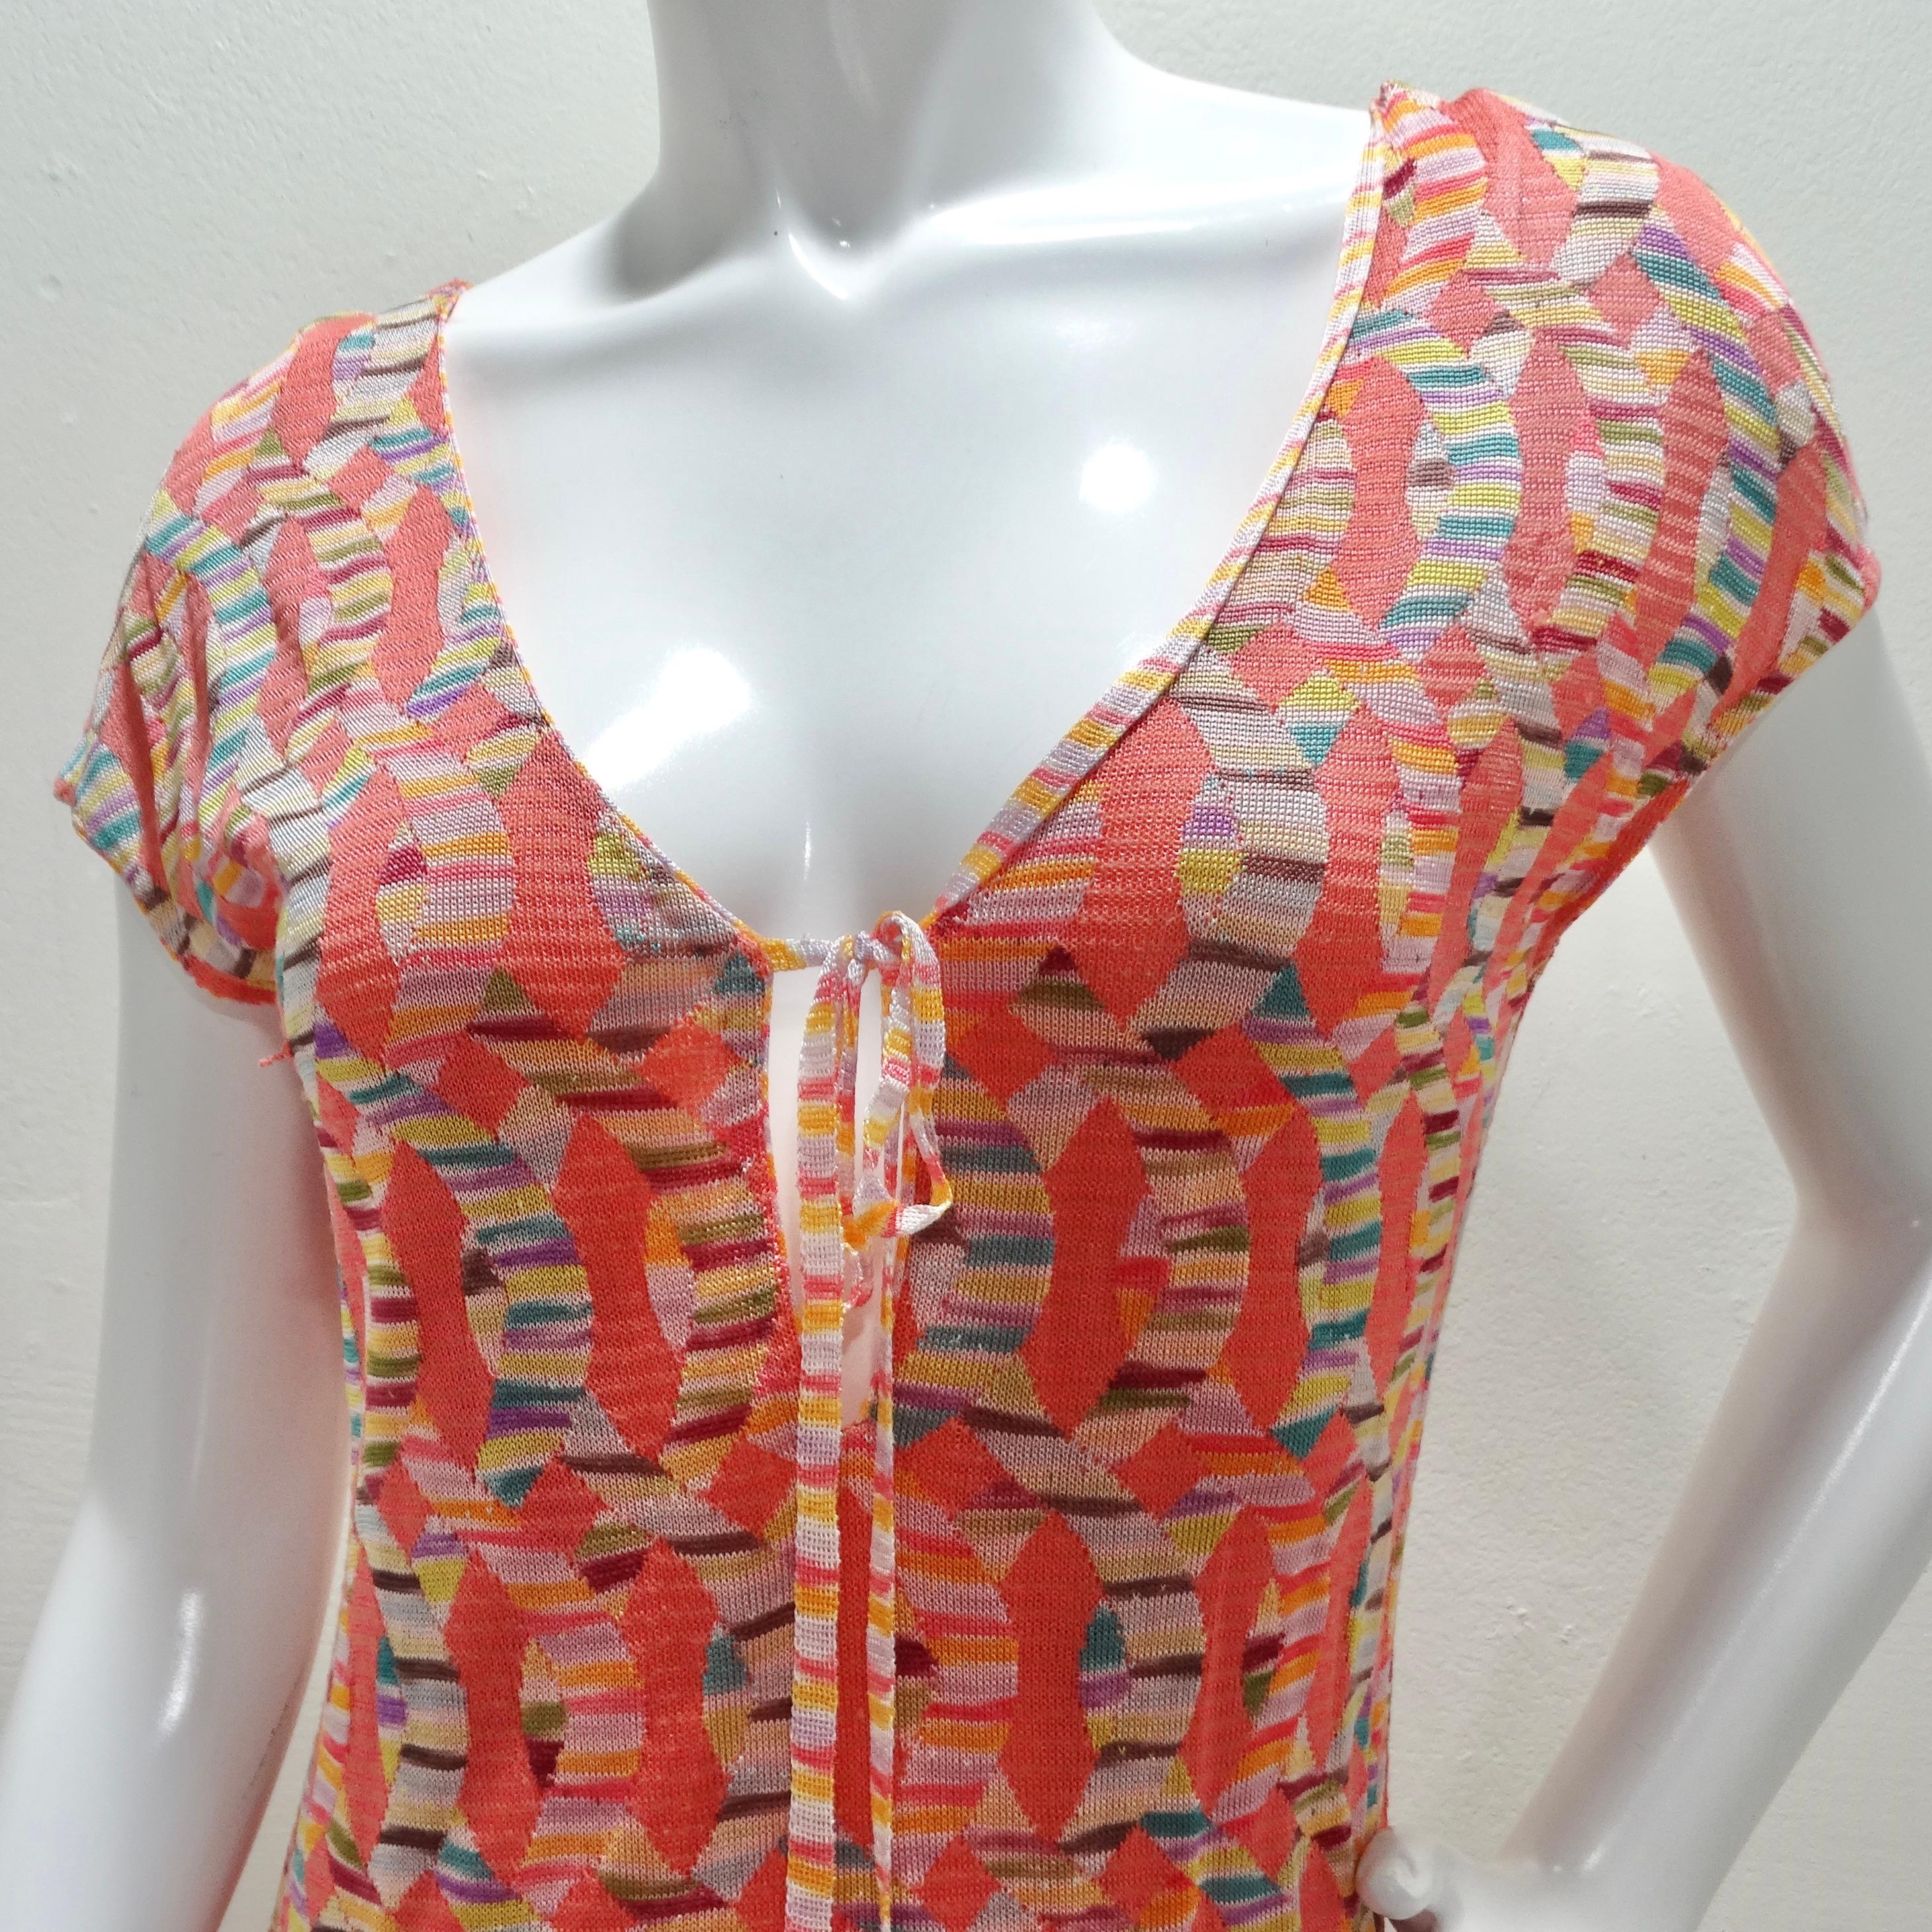 Das Missoni 1990s Multicolor Knit Keyhole Tie Dress ist ein fesselndes Vintage-Stück, das die Essenz des kultigen Missoni-Stils verkörpert.

Dieses mittellange Kleid aus luxuriösem, mehrfarbig bedrucktem Missoni-Strick besticht durch sein